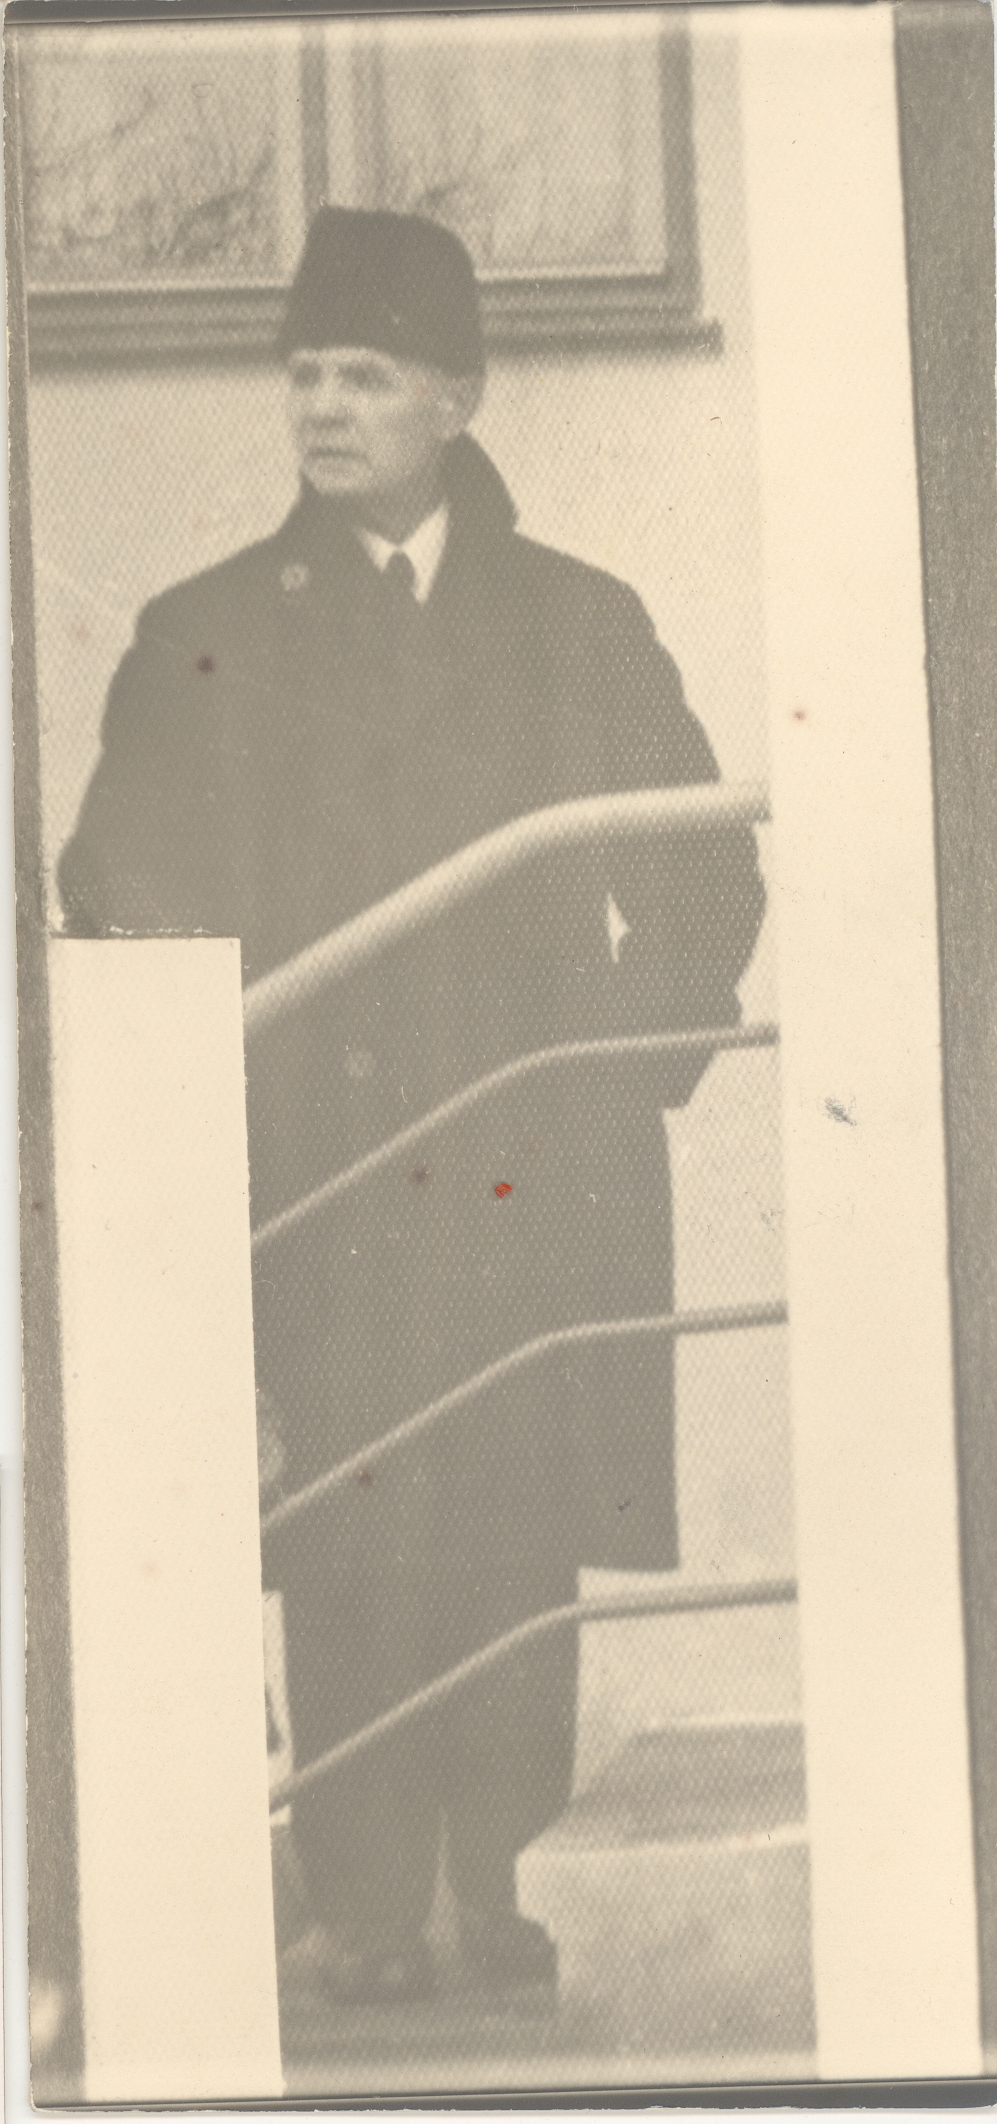 K. e. Sööt on the staircase of Einasto House, 1938